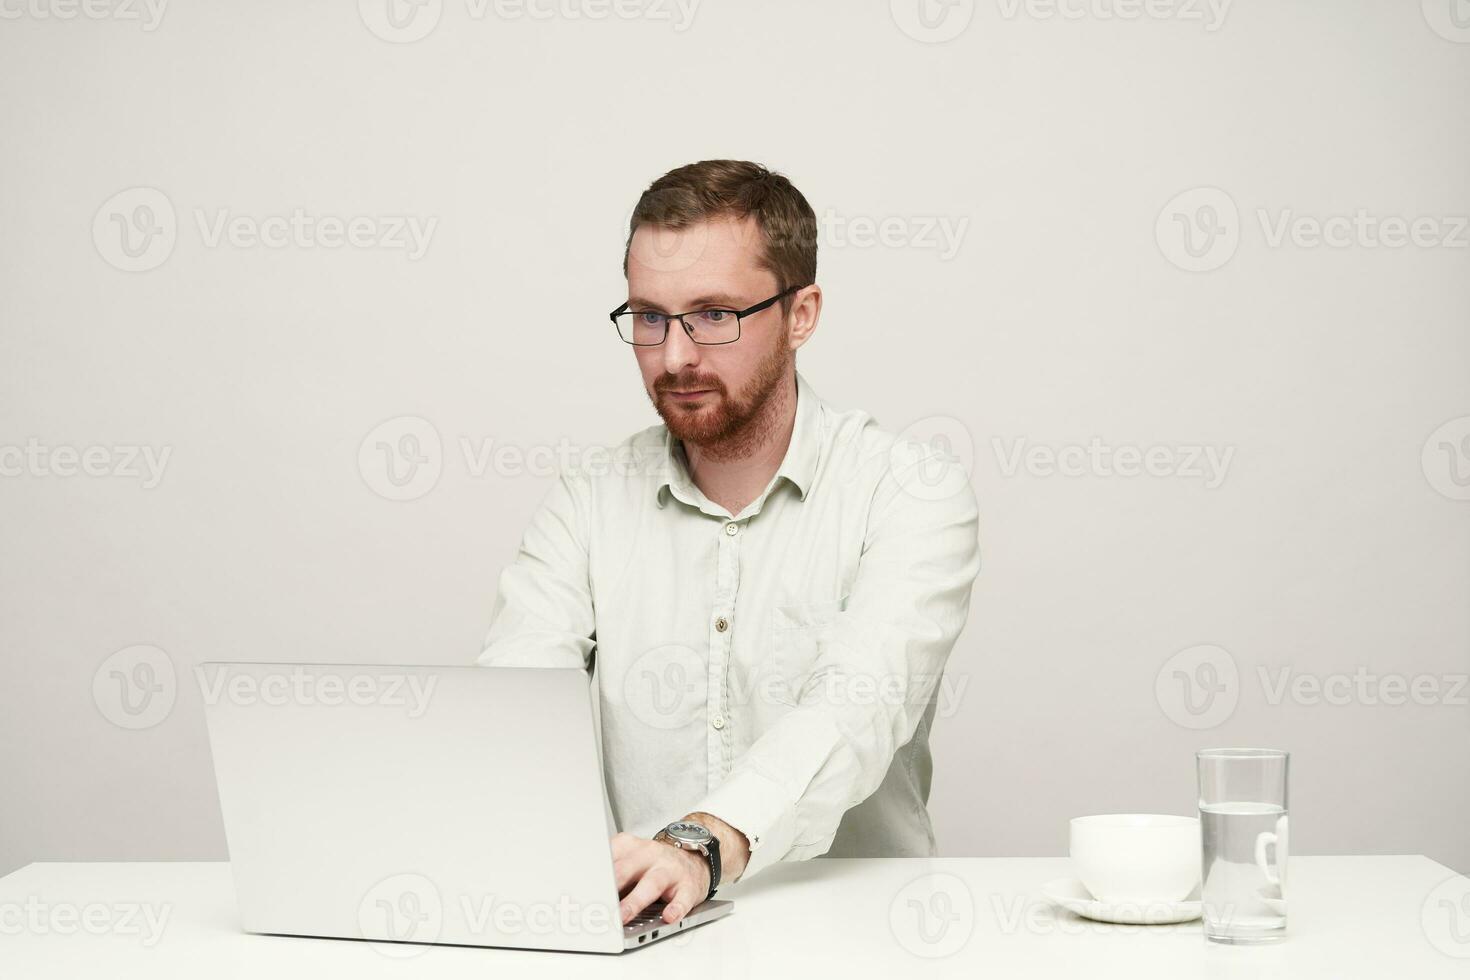 concentrado jovem barba por fazer cabelo curto masculino dentro óculos digitando texto com dele computador portátil e olhando atentamente em tela, sentado sobre branco fundo foto